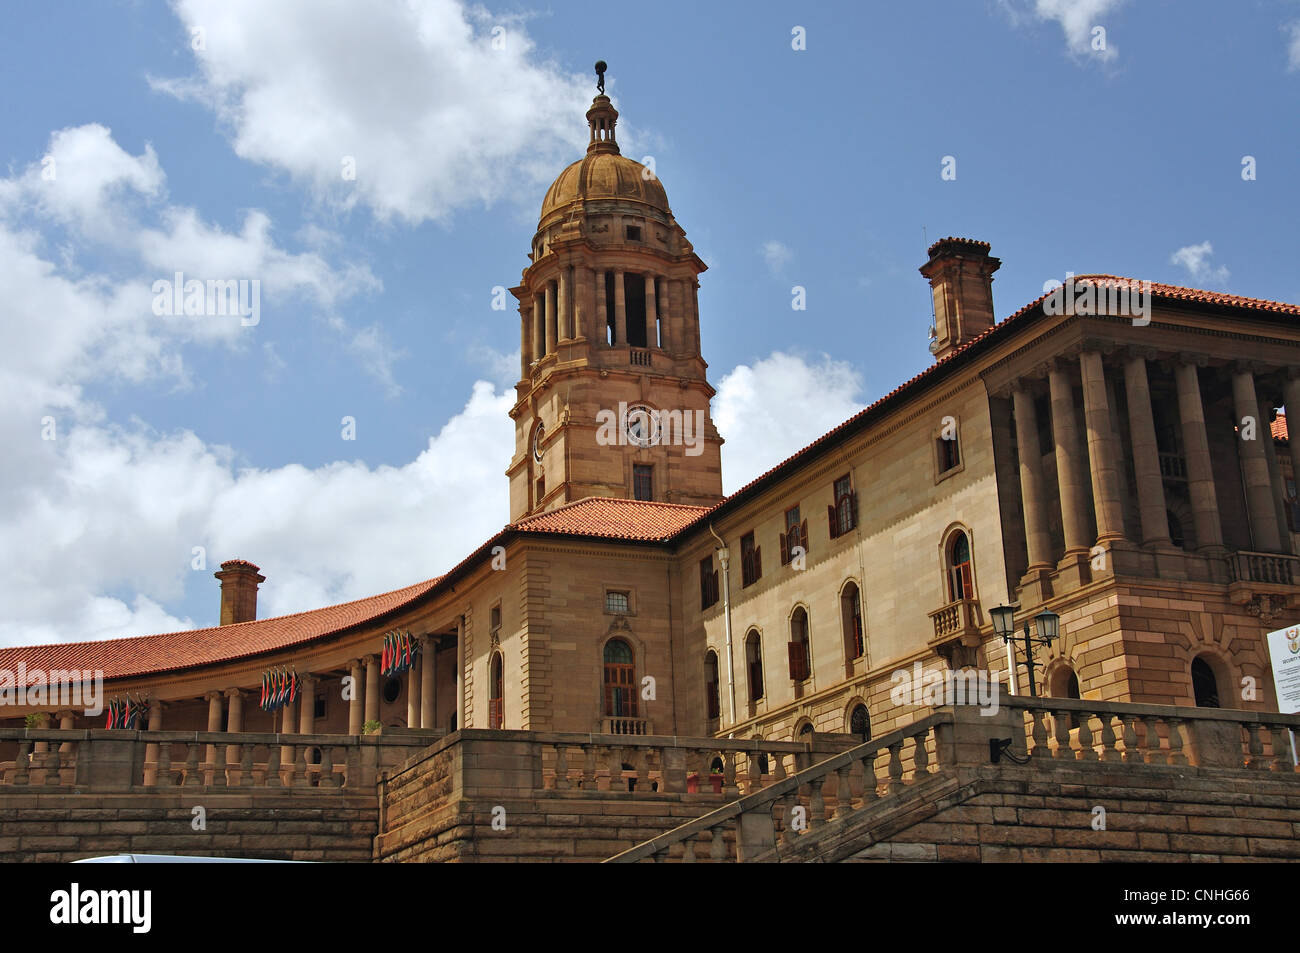 L'aile est de l'Union Buildings, Meintjieskop, Pretoria, la Province de Gauteng, Afrique du Sud Banque D'Images